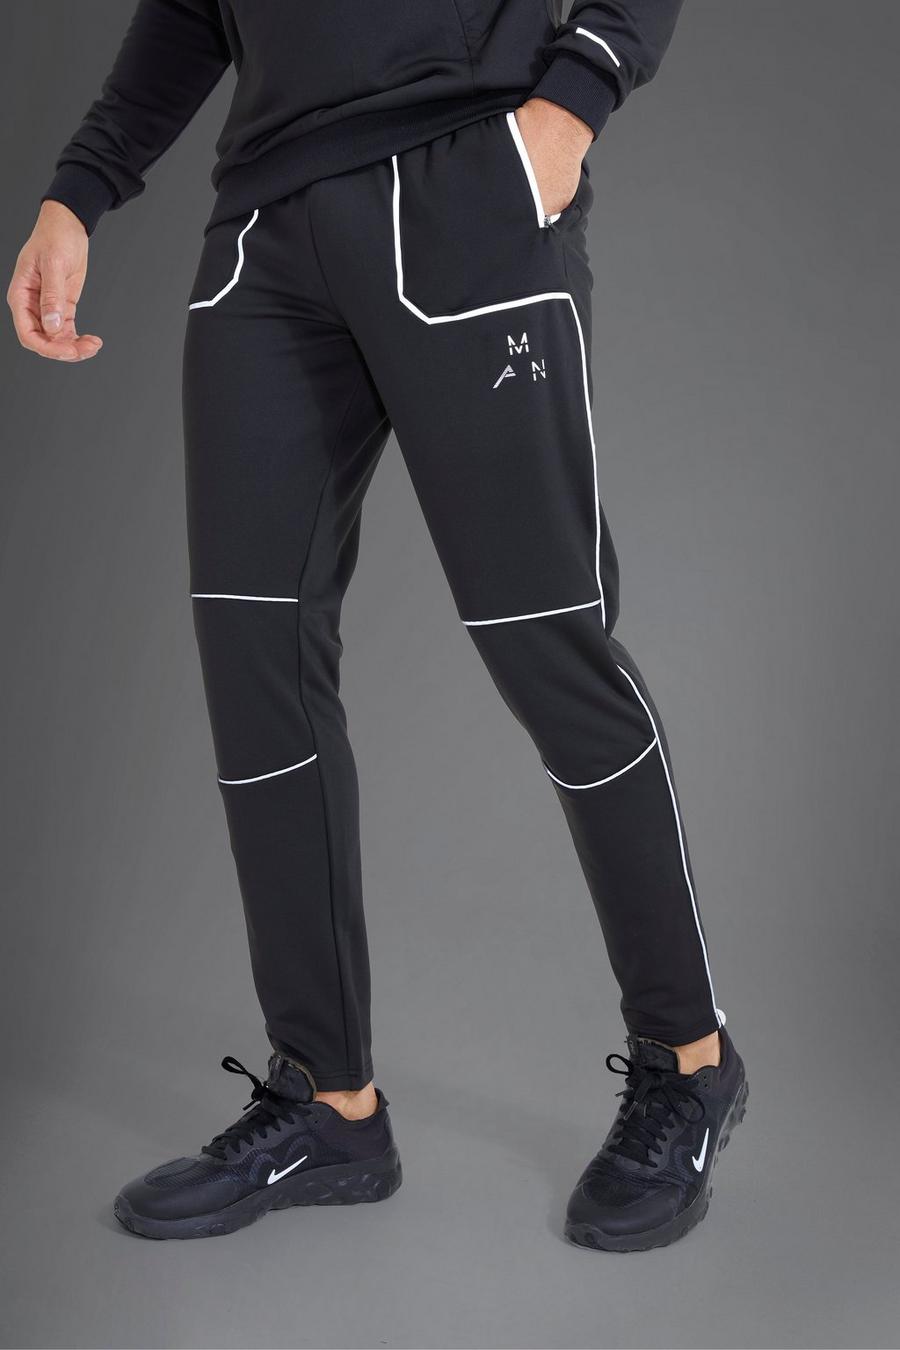 Pantaloni tuta Man Active Gym per alta performance riflettenti, Black image number 1